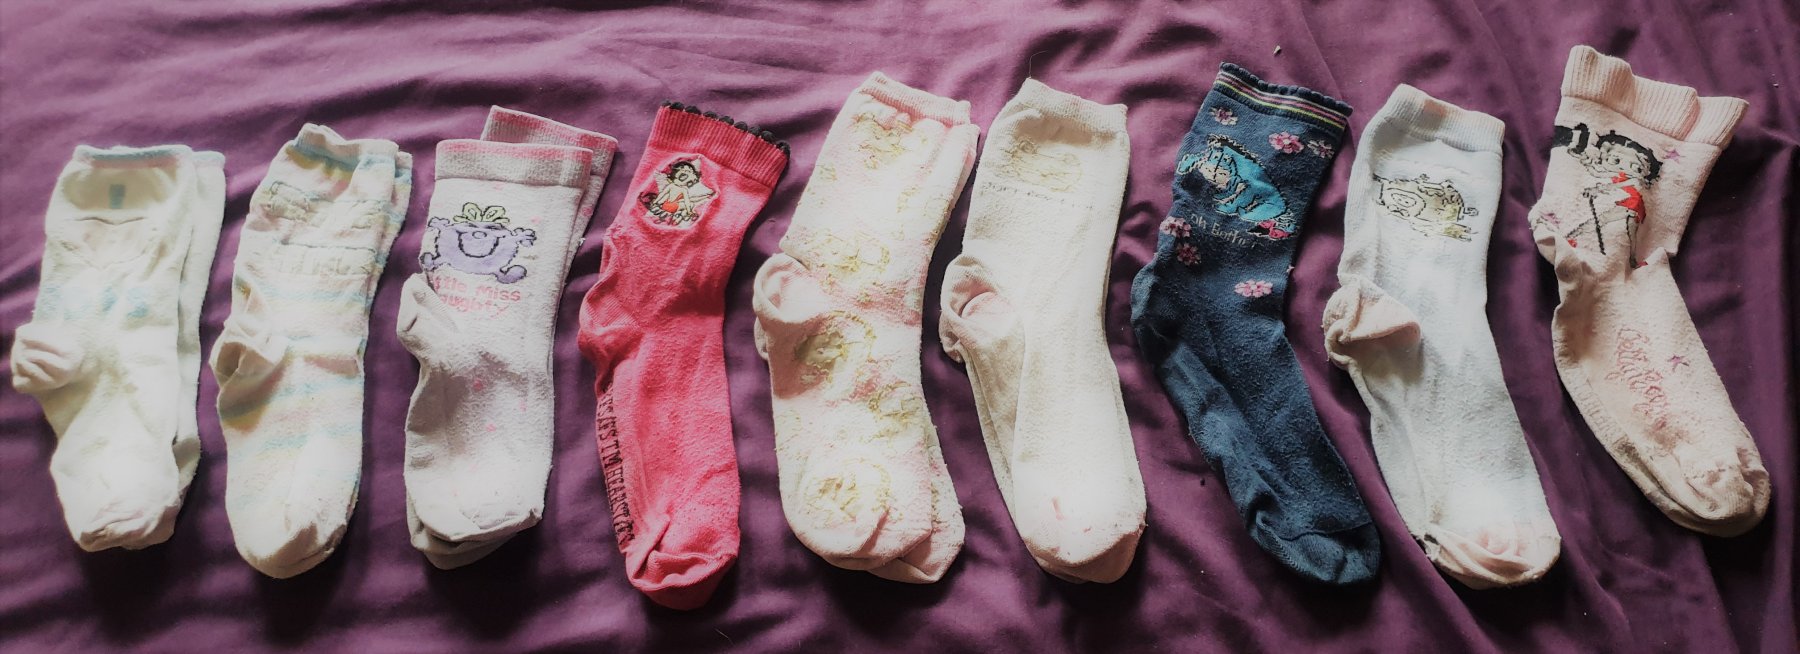 Cute socks